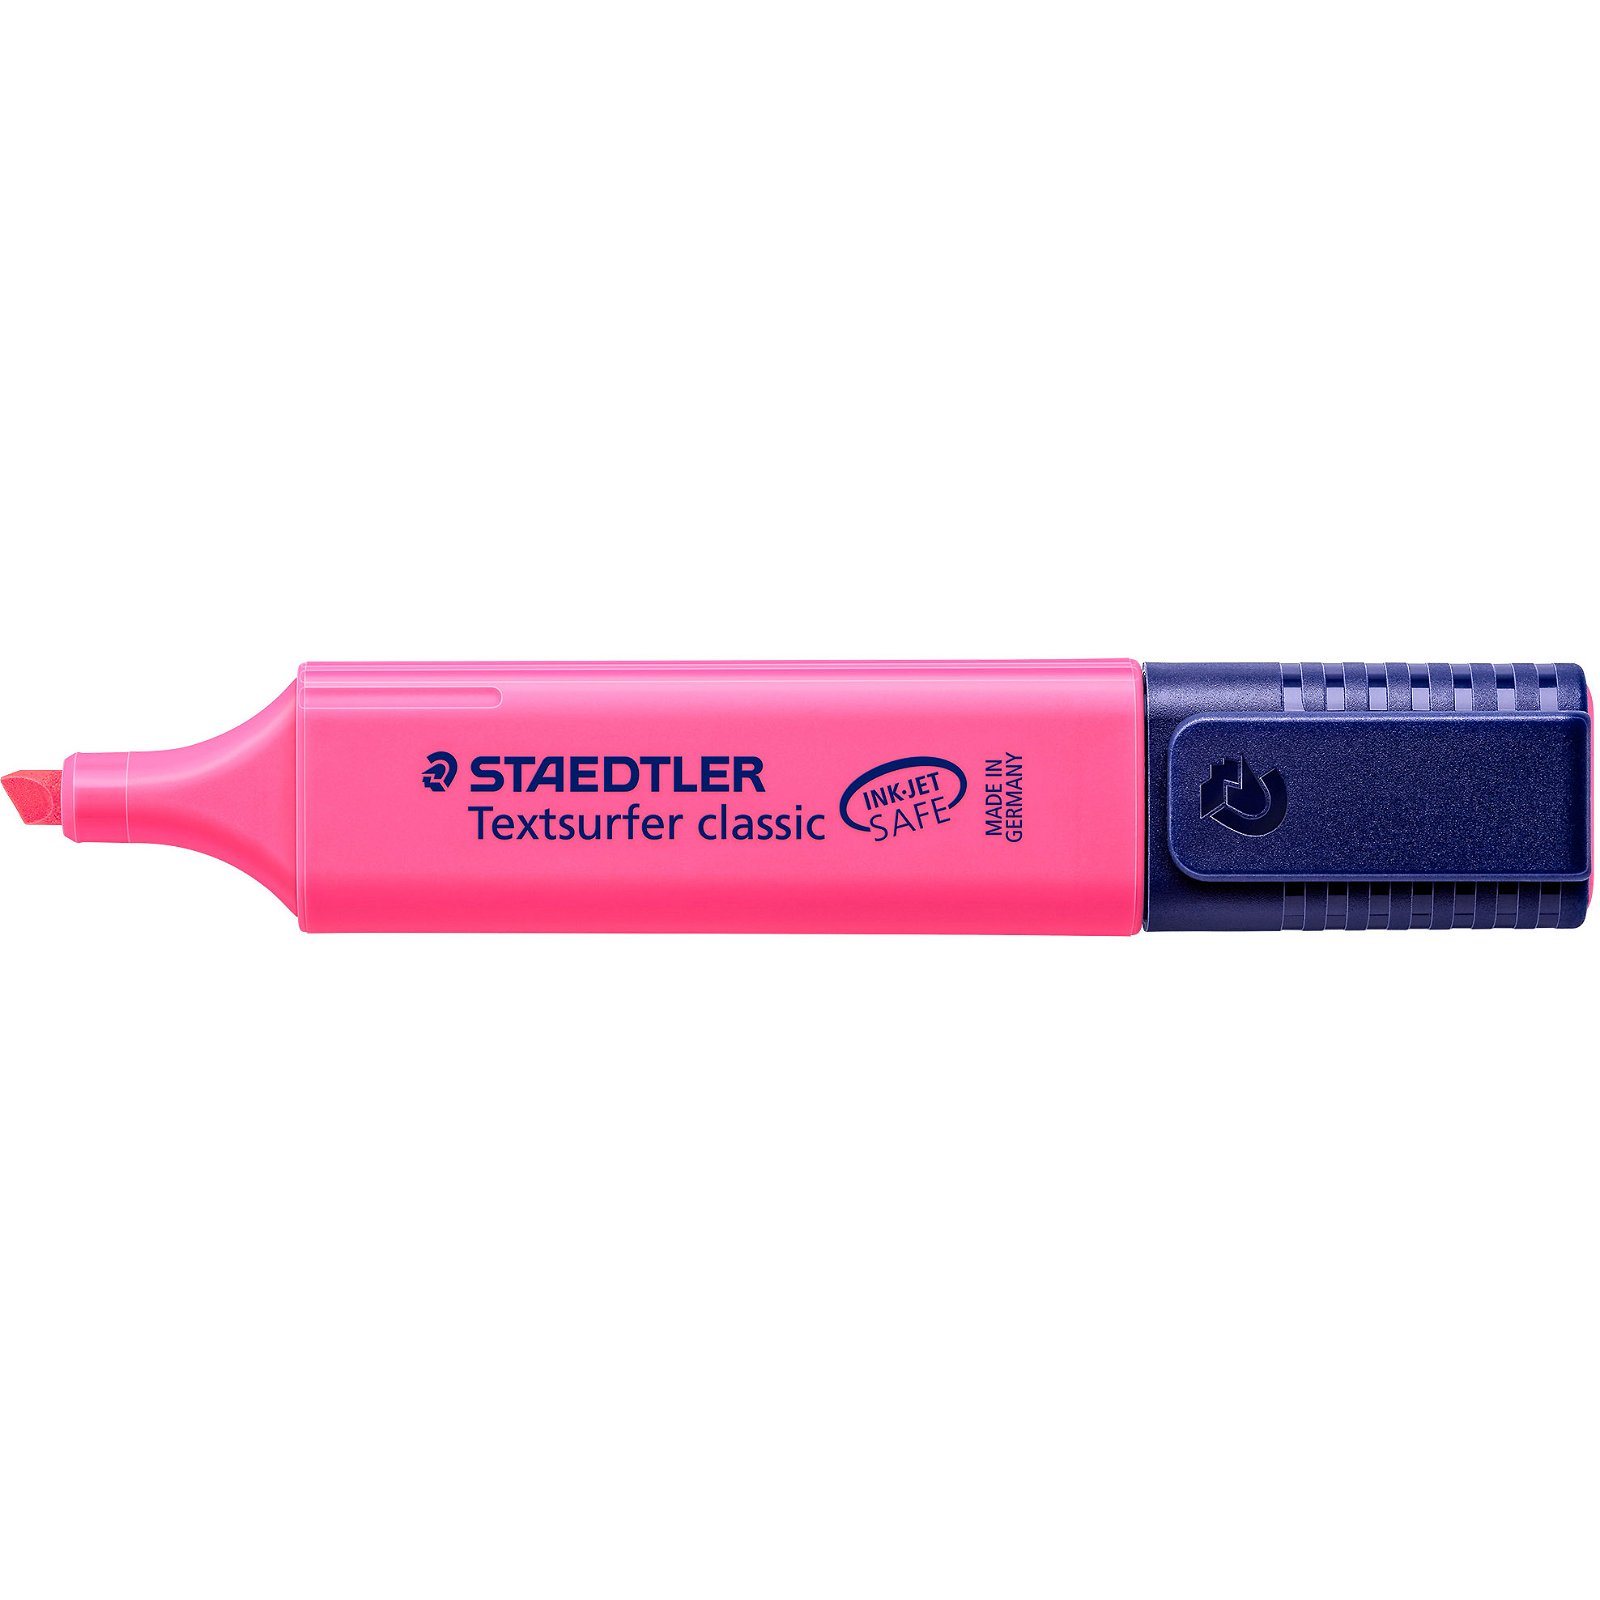 STAEDTLER tekstsurfer 364 classic tekstmarker pink